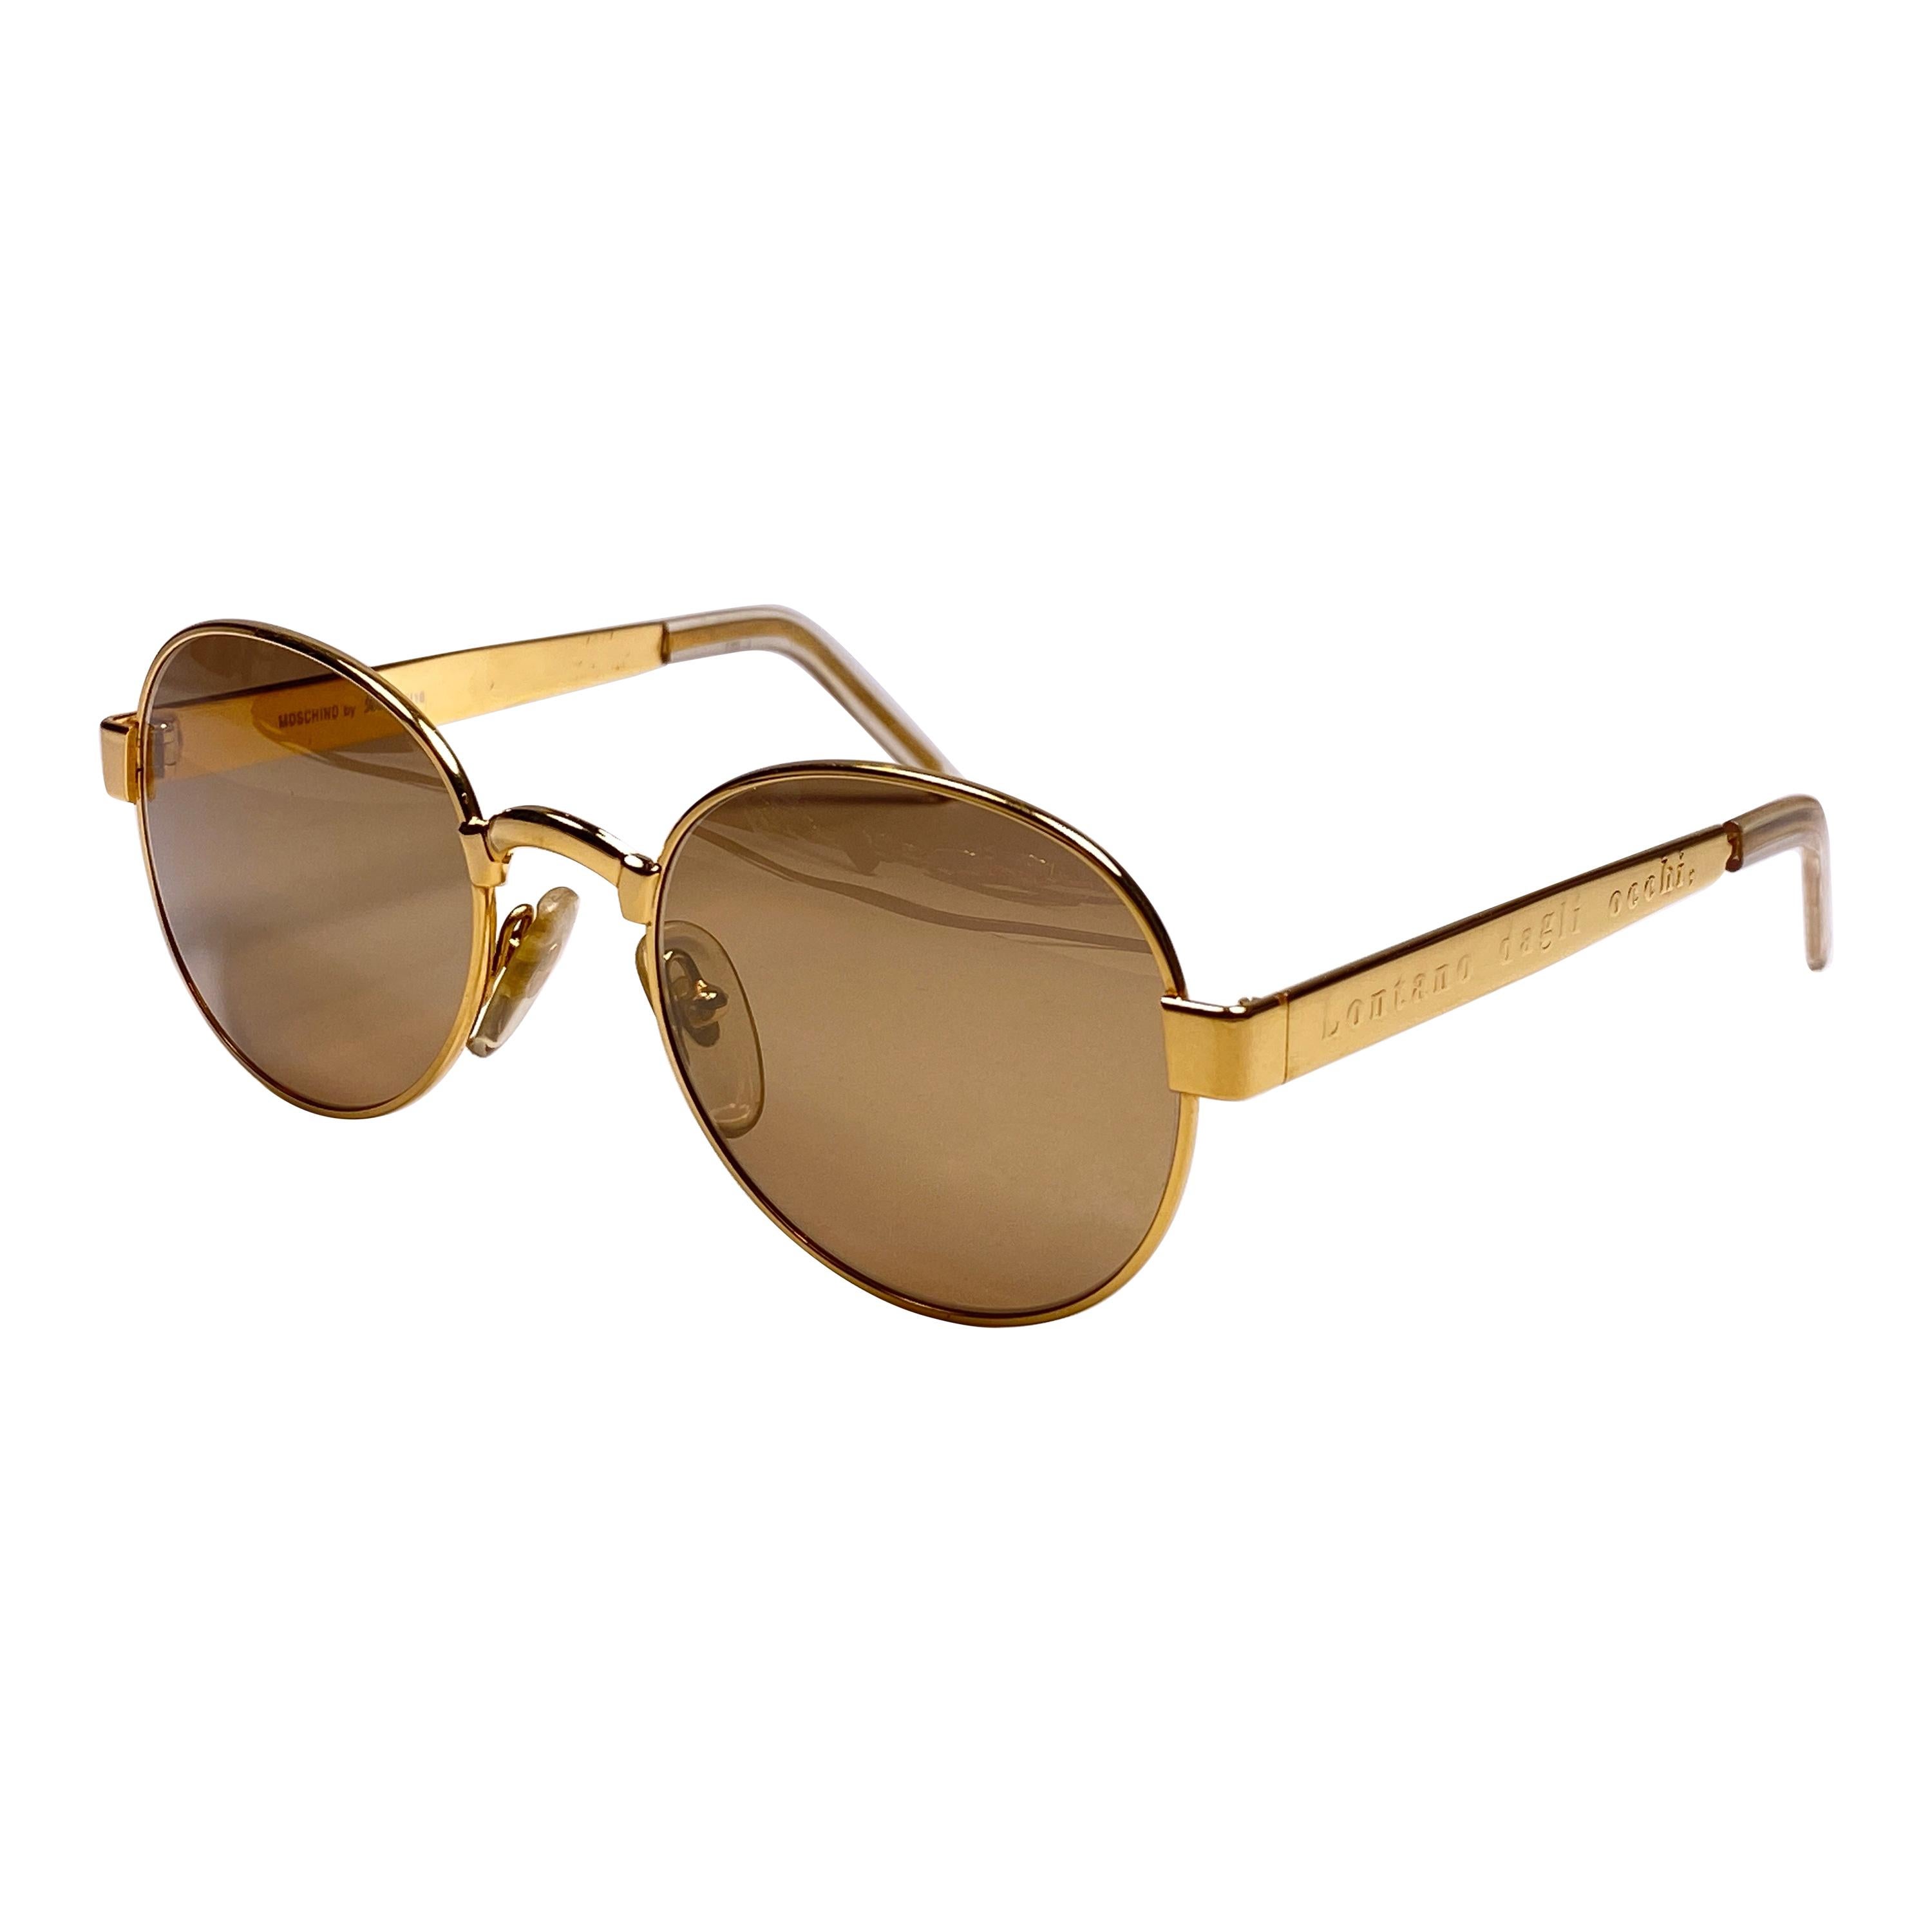 New Vintage Moschino By Persol M16 " Lontano Dagli Occhi "  Gold Sunglasses 